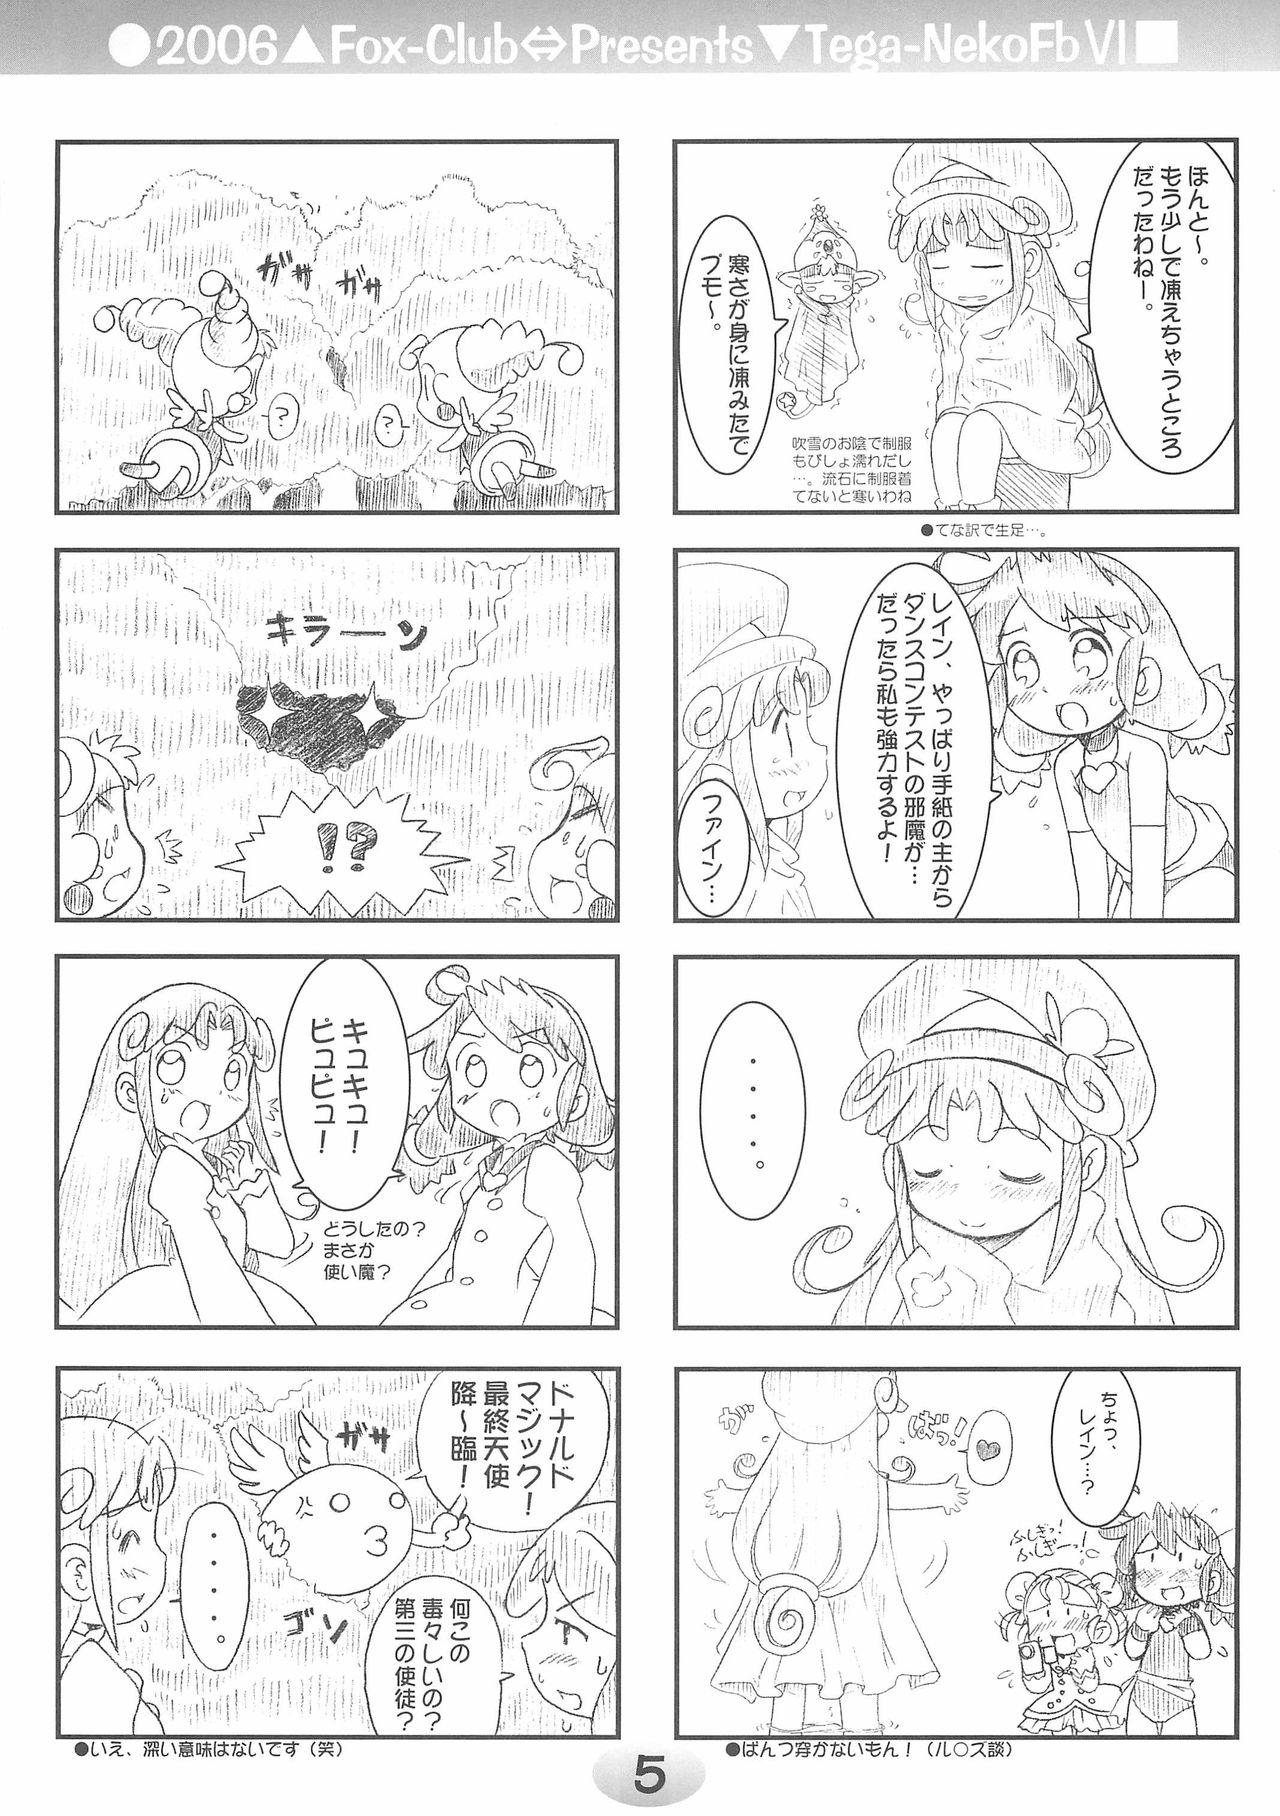 Bear TeGa-NeKo Fb VI - Fushigiboshi no futagohime Anus - Page 5